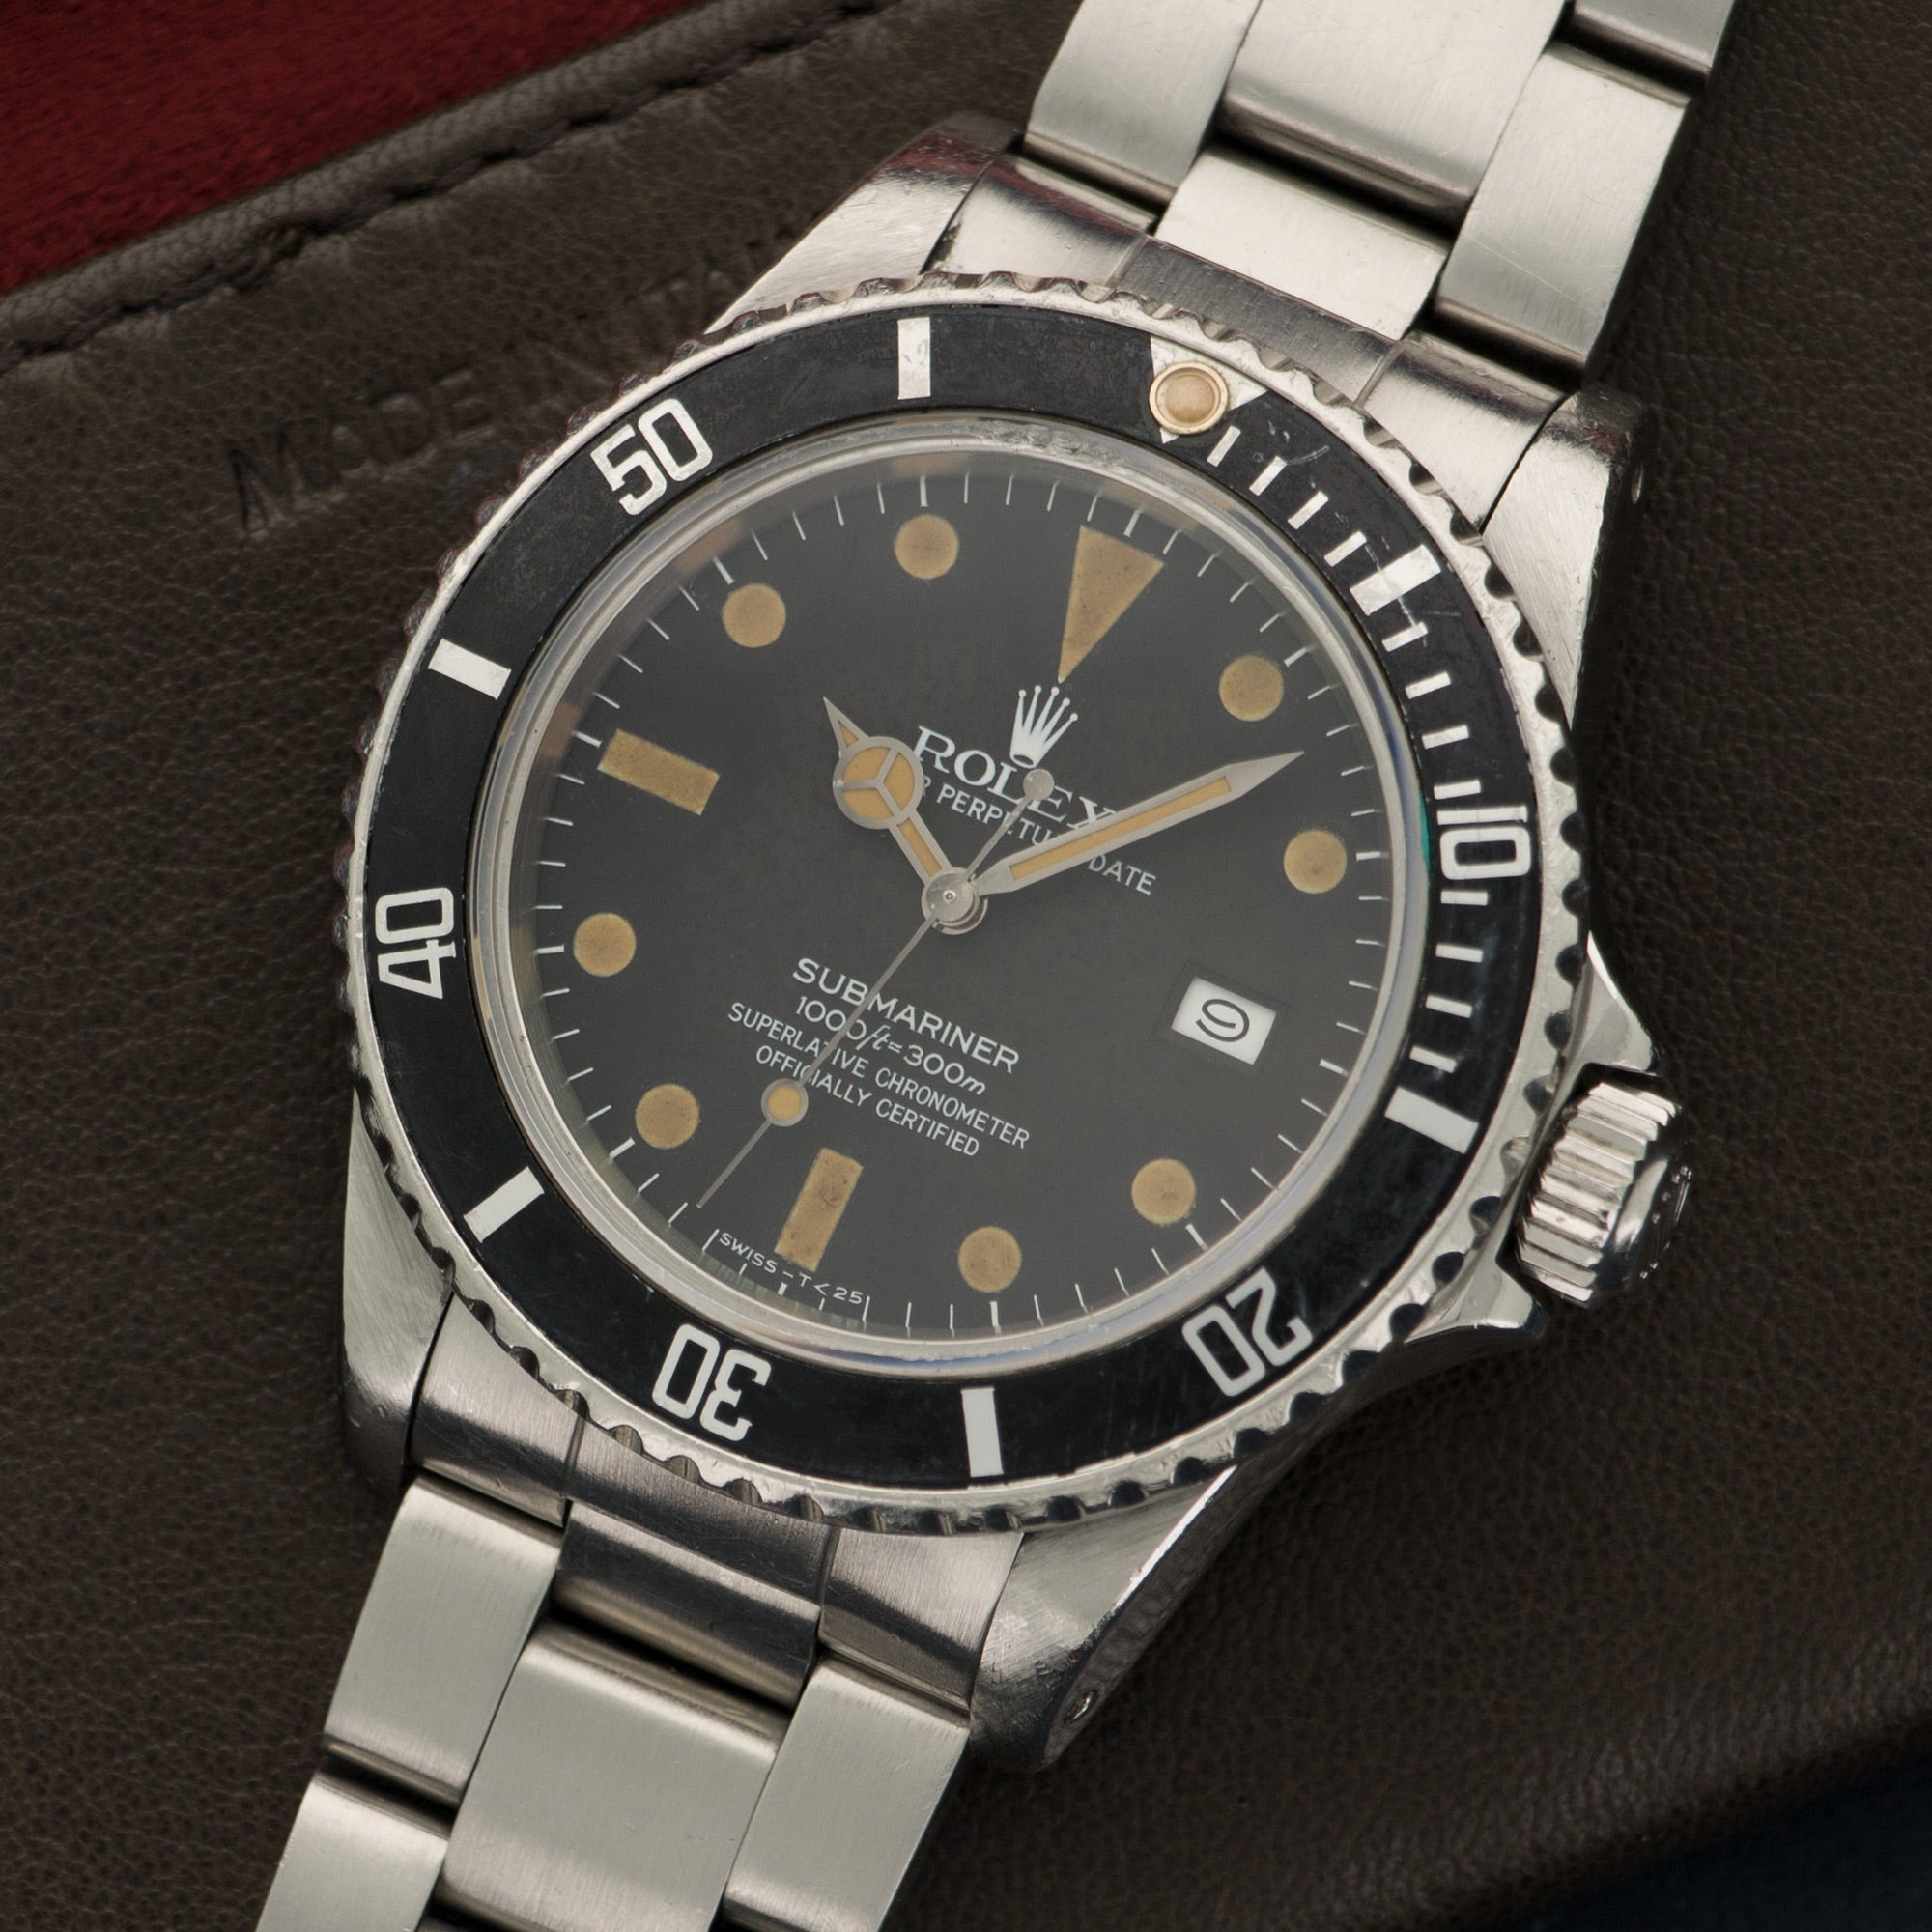 Rolex - Vintage Rolex Submariner Stainless Steel Ref. 16800 - The Keystone Watches